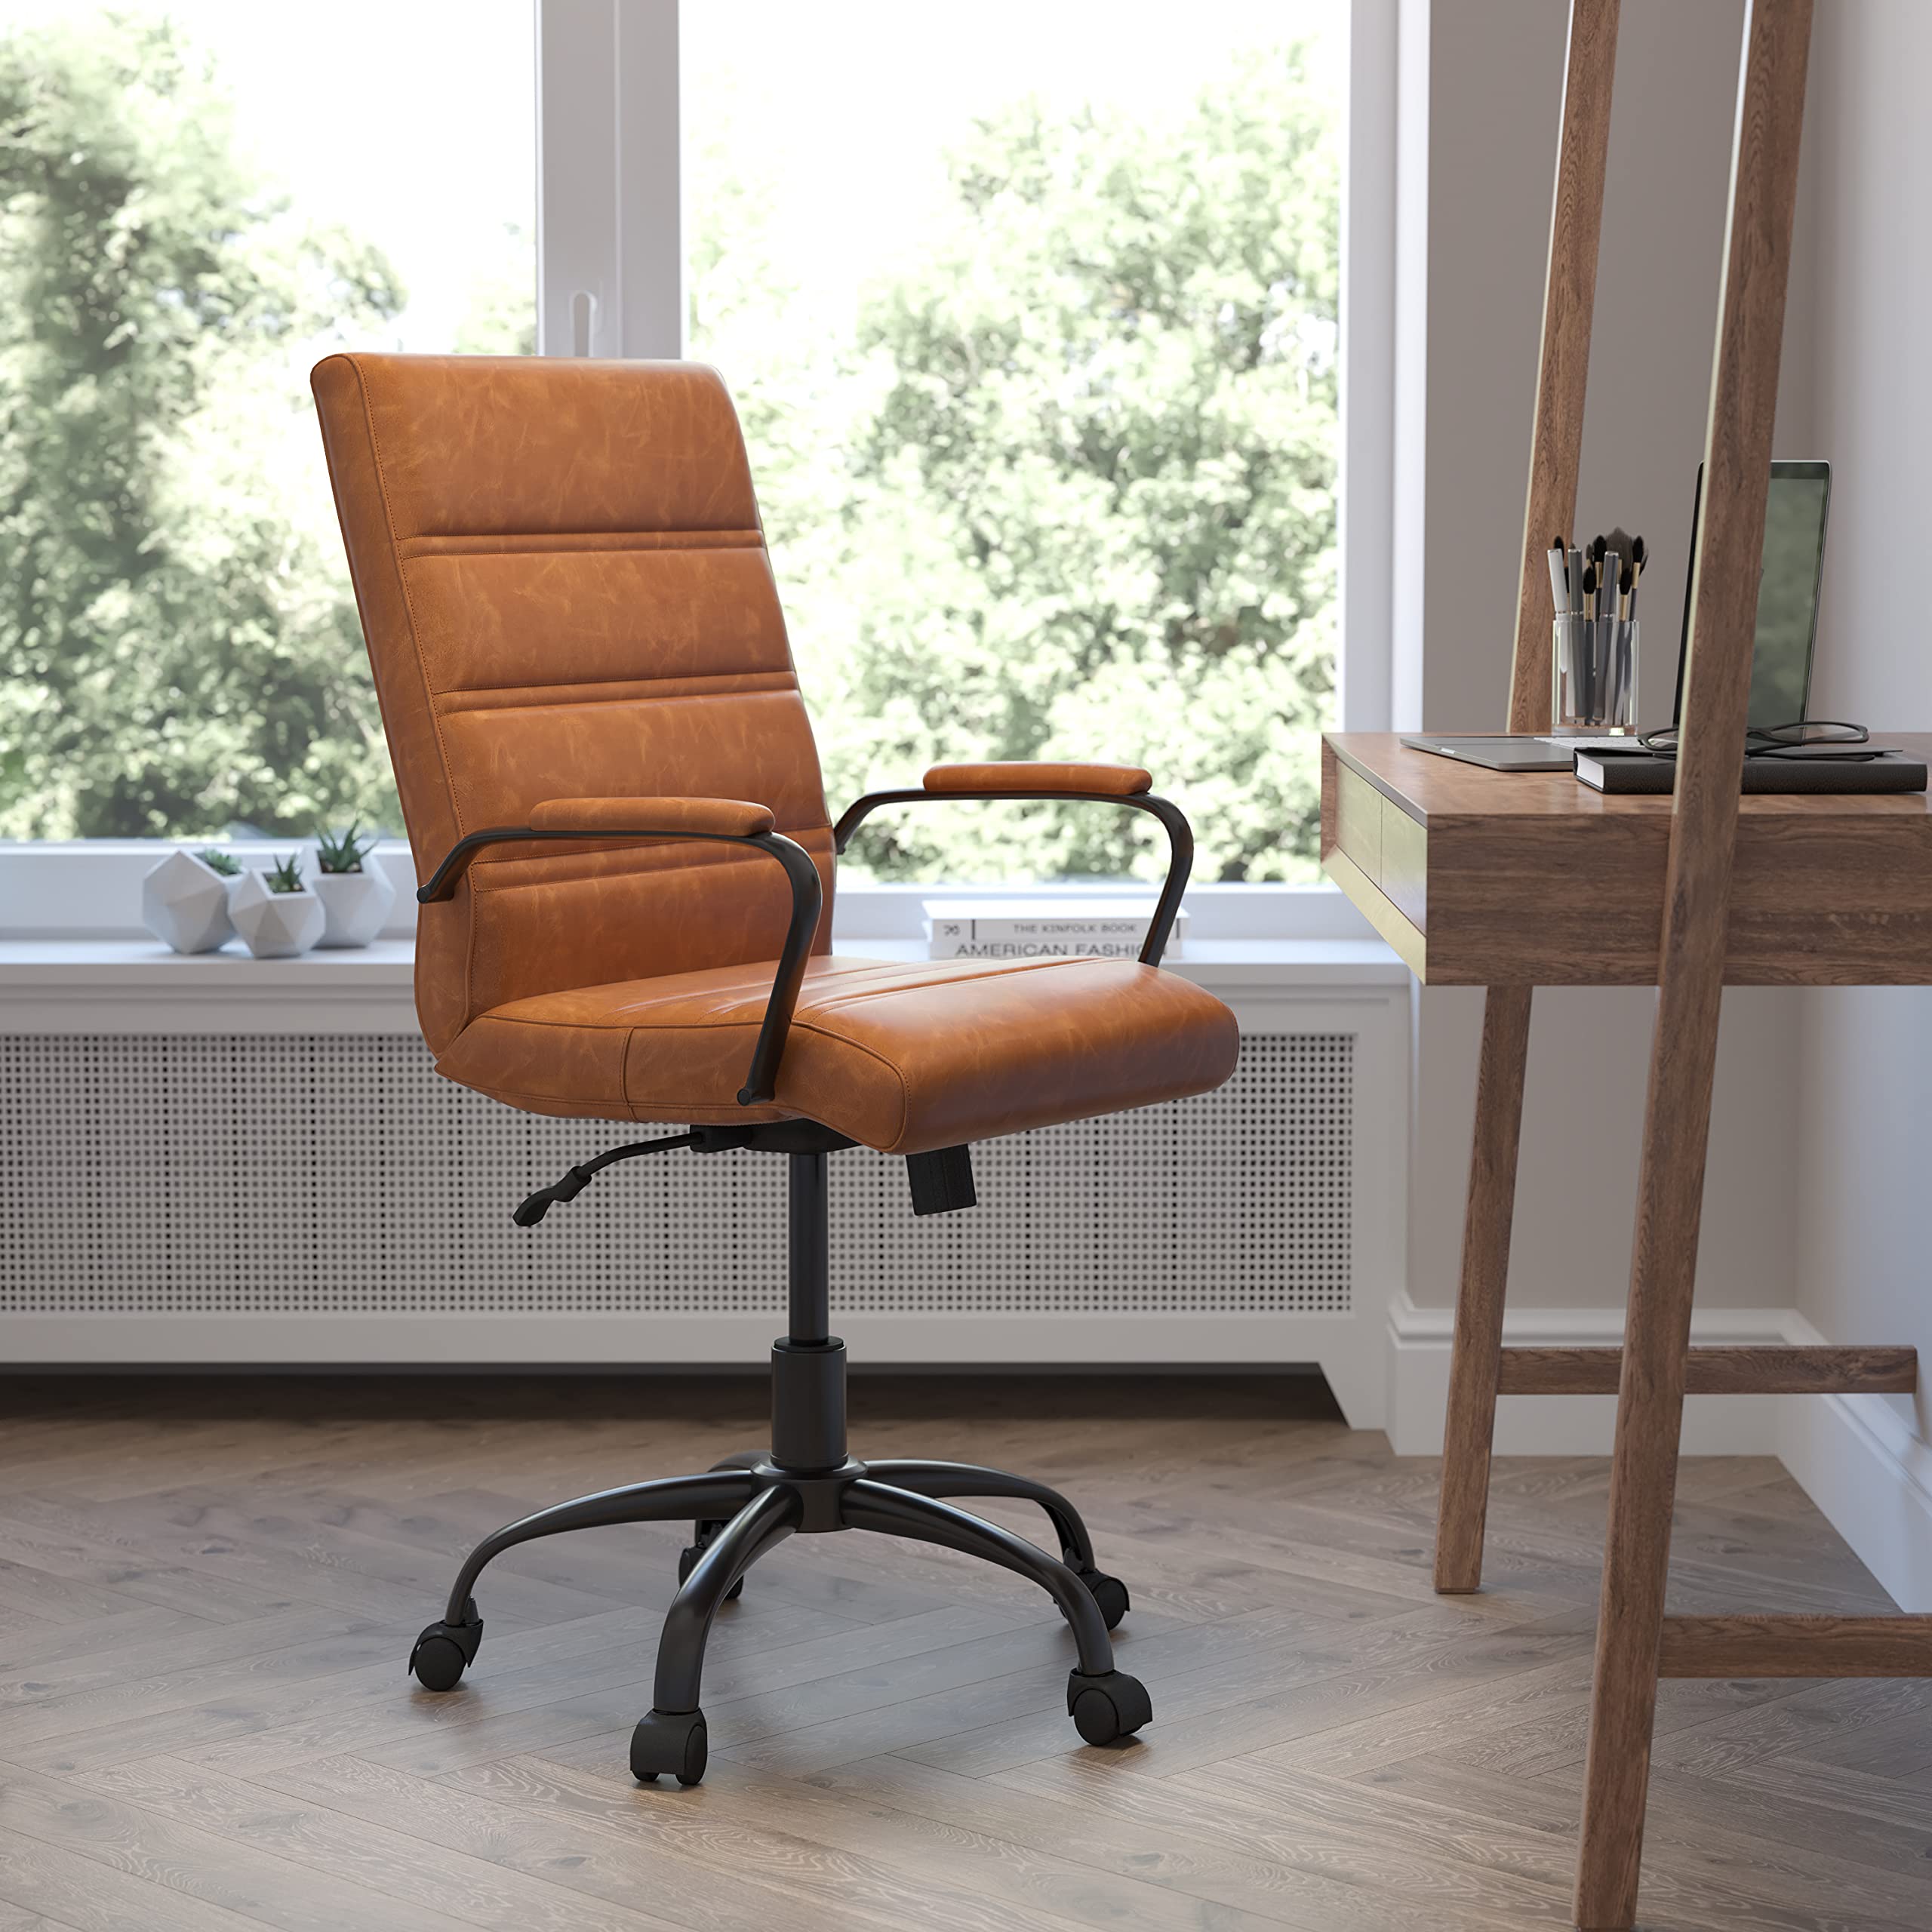 Flash Furniture Cadeira de escrivaninha Whitney com encosto médio - Cadeira de escritório giratória executiva de couro marrom com moldura preta - Cadeira com braço giratório